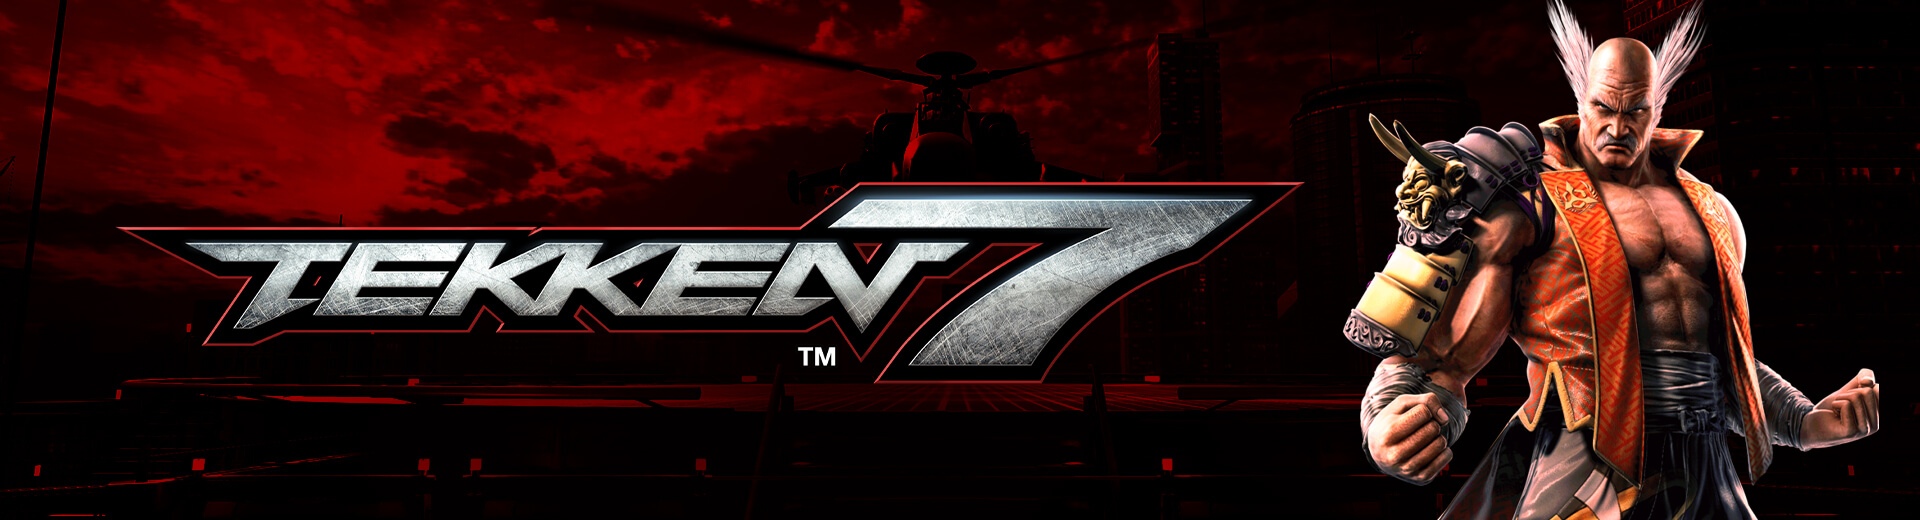 Tekken 7 @ The Cave 11/8